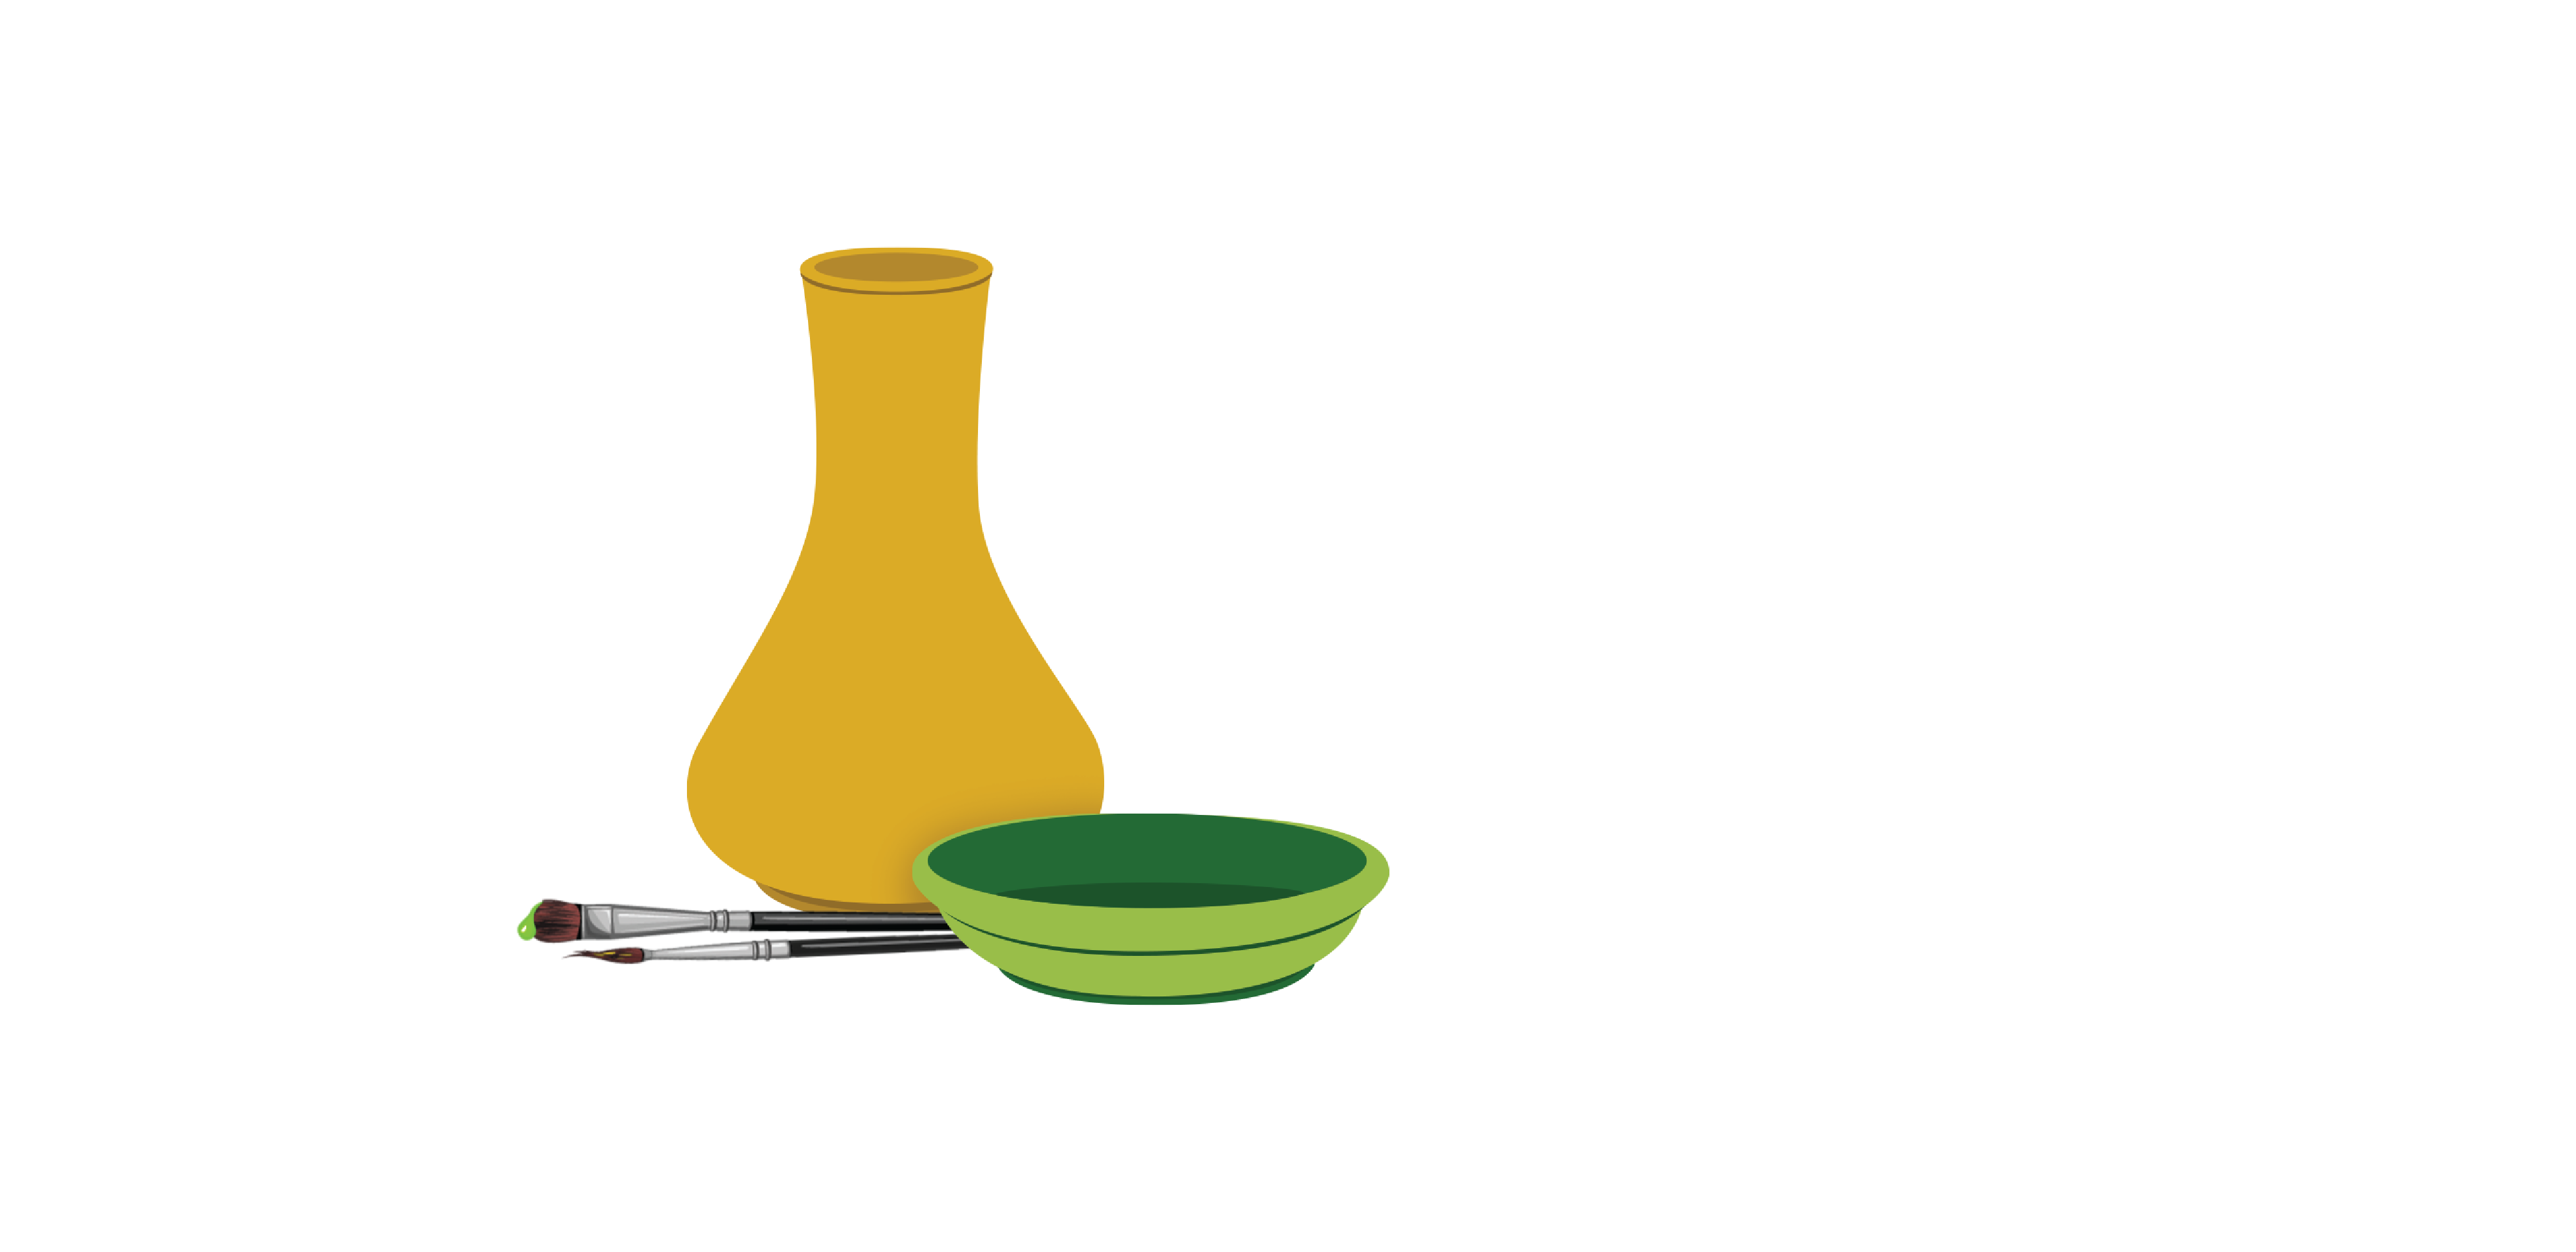 Paint a Pot